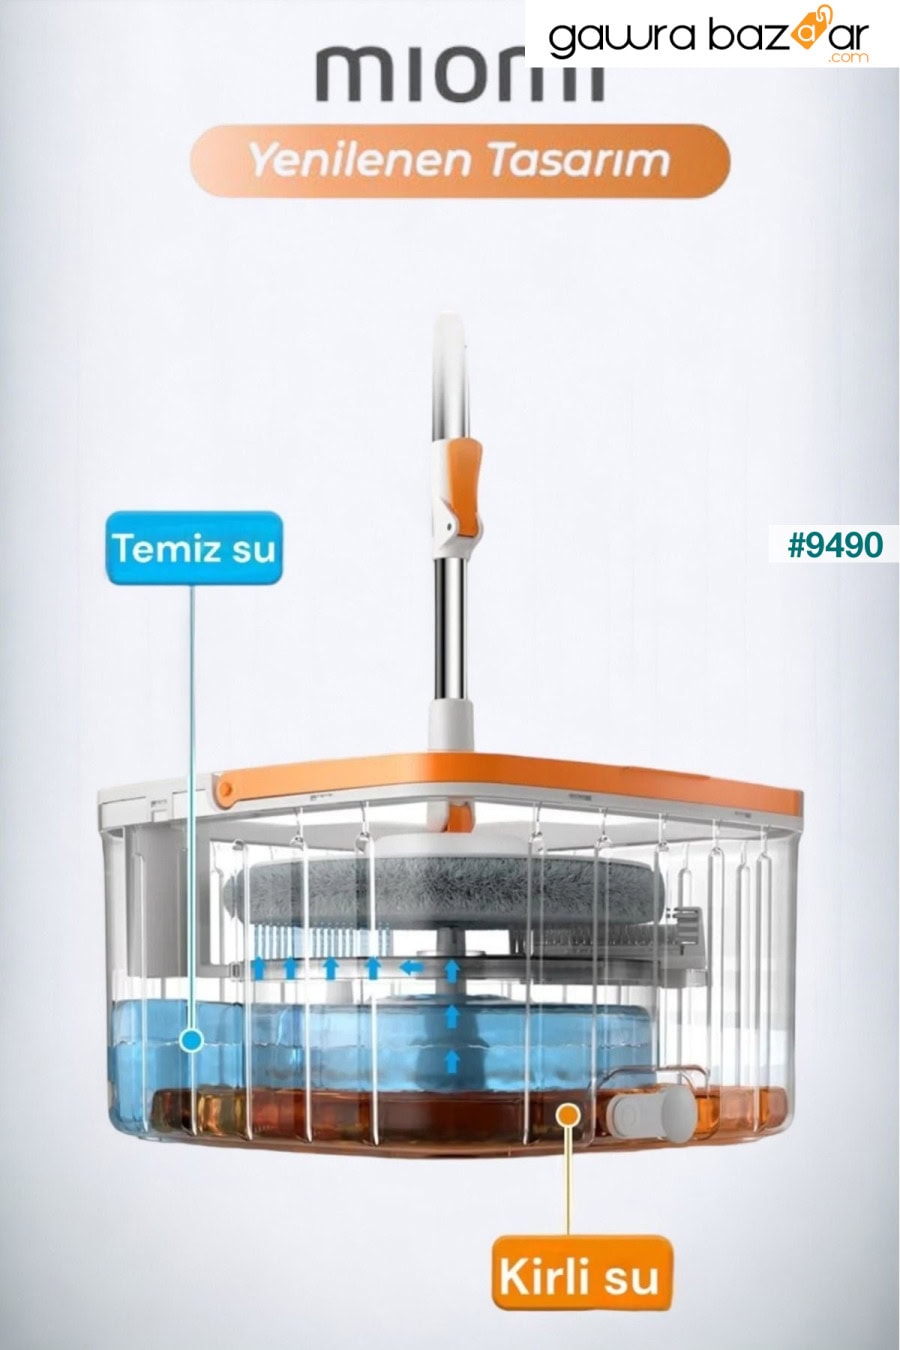 مجموعة ممسحة للتنظيف الأوتوماتيكي مع ممسحة احتياطية لفصل المياه النظيفة والمتسخة، رأس مربع بتصميم متجدد Miomi 3